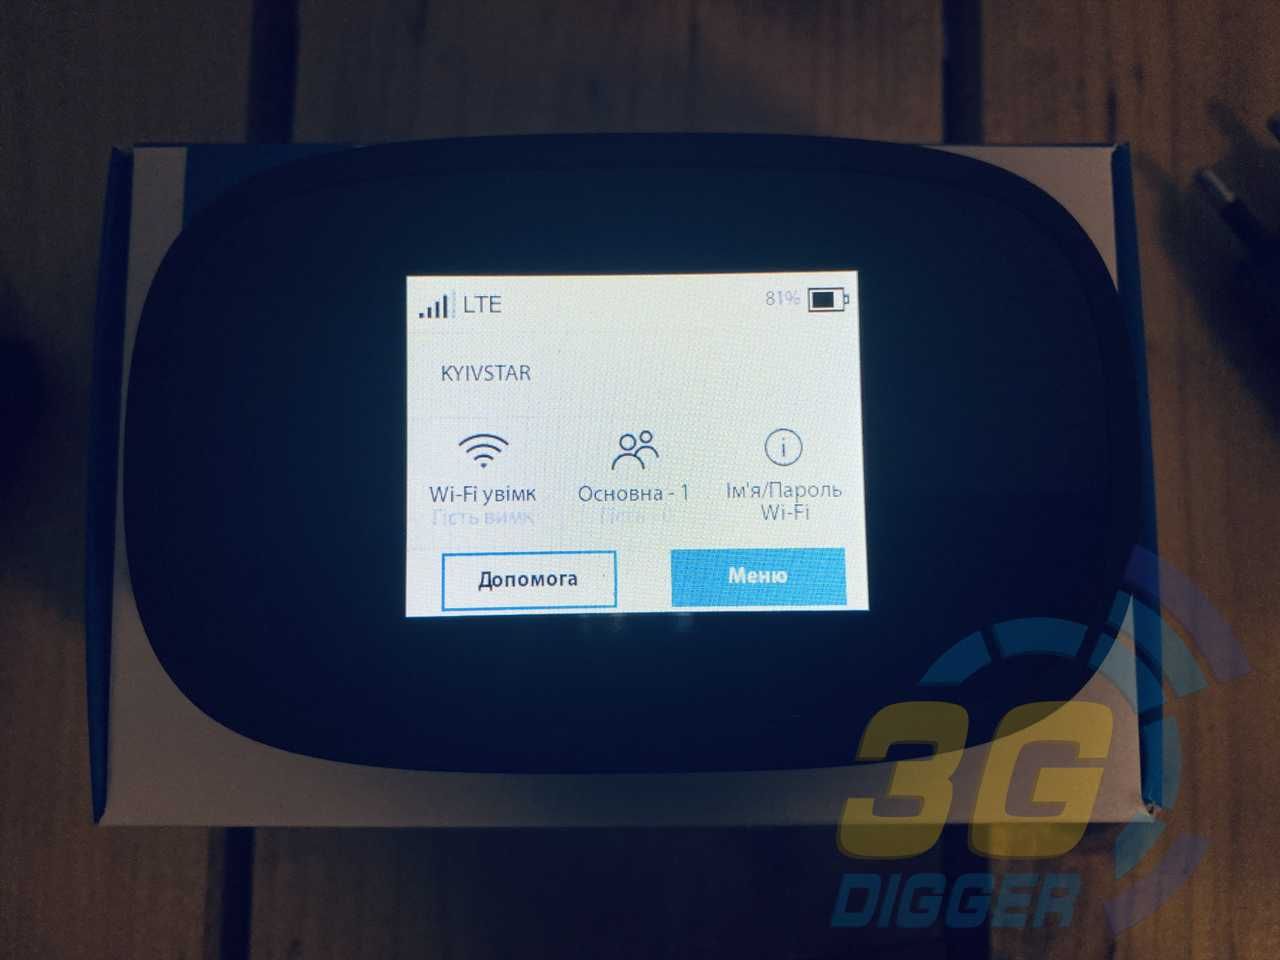 Мобильный 3G/4G WiFi роутер Novatel MiFi 8000L (Новый)